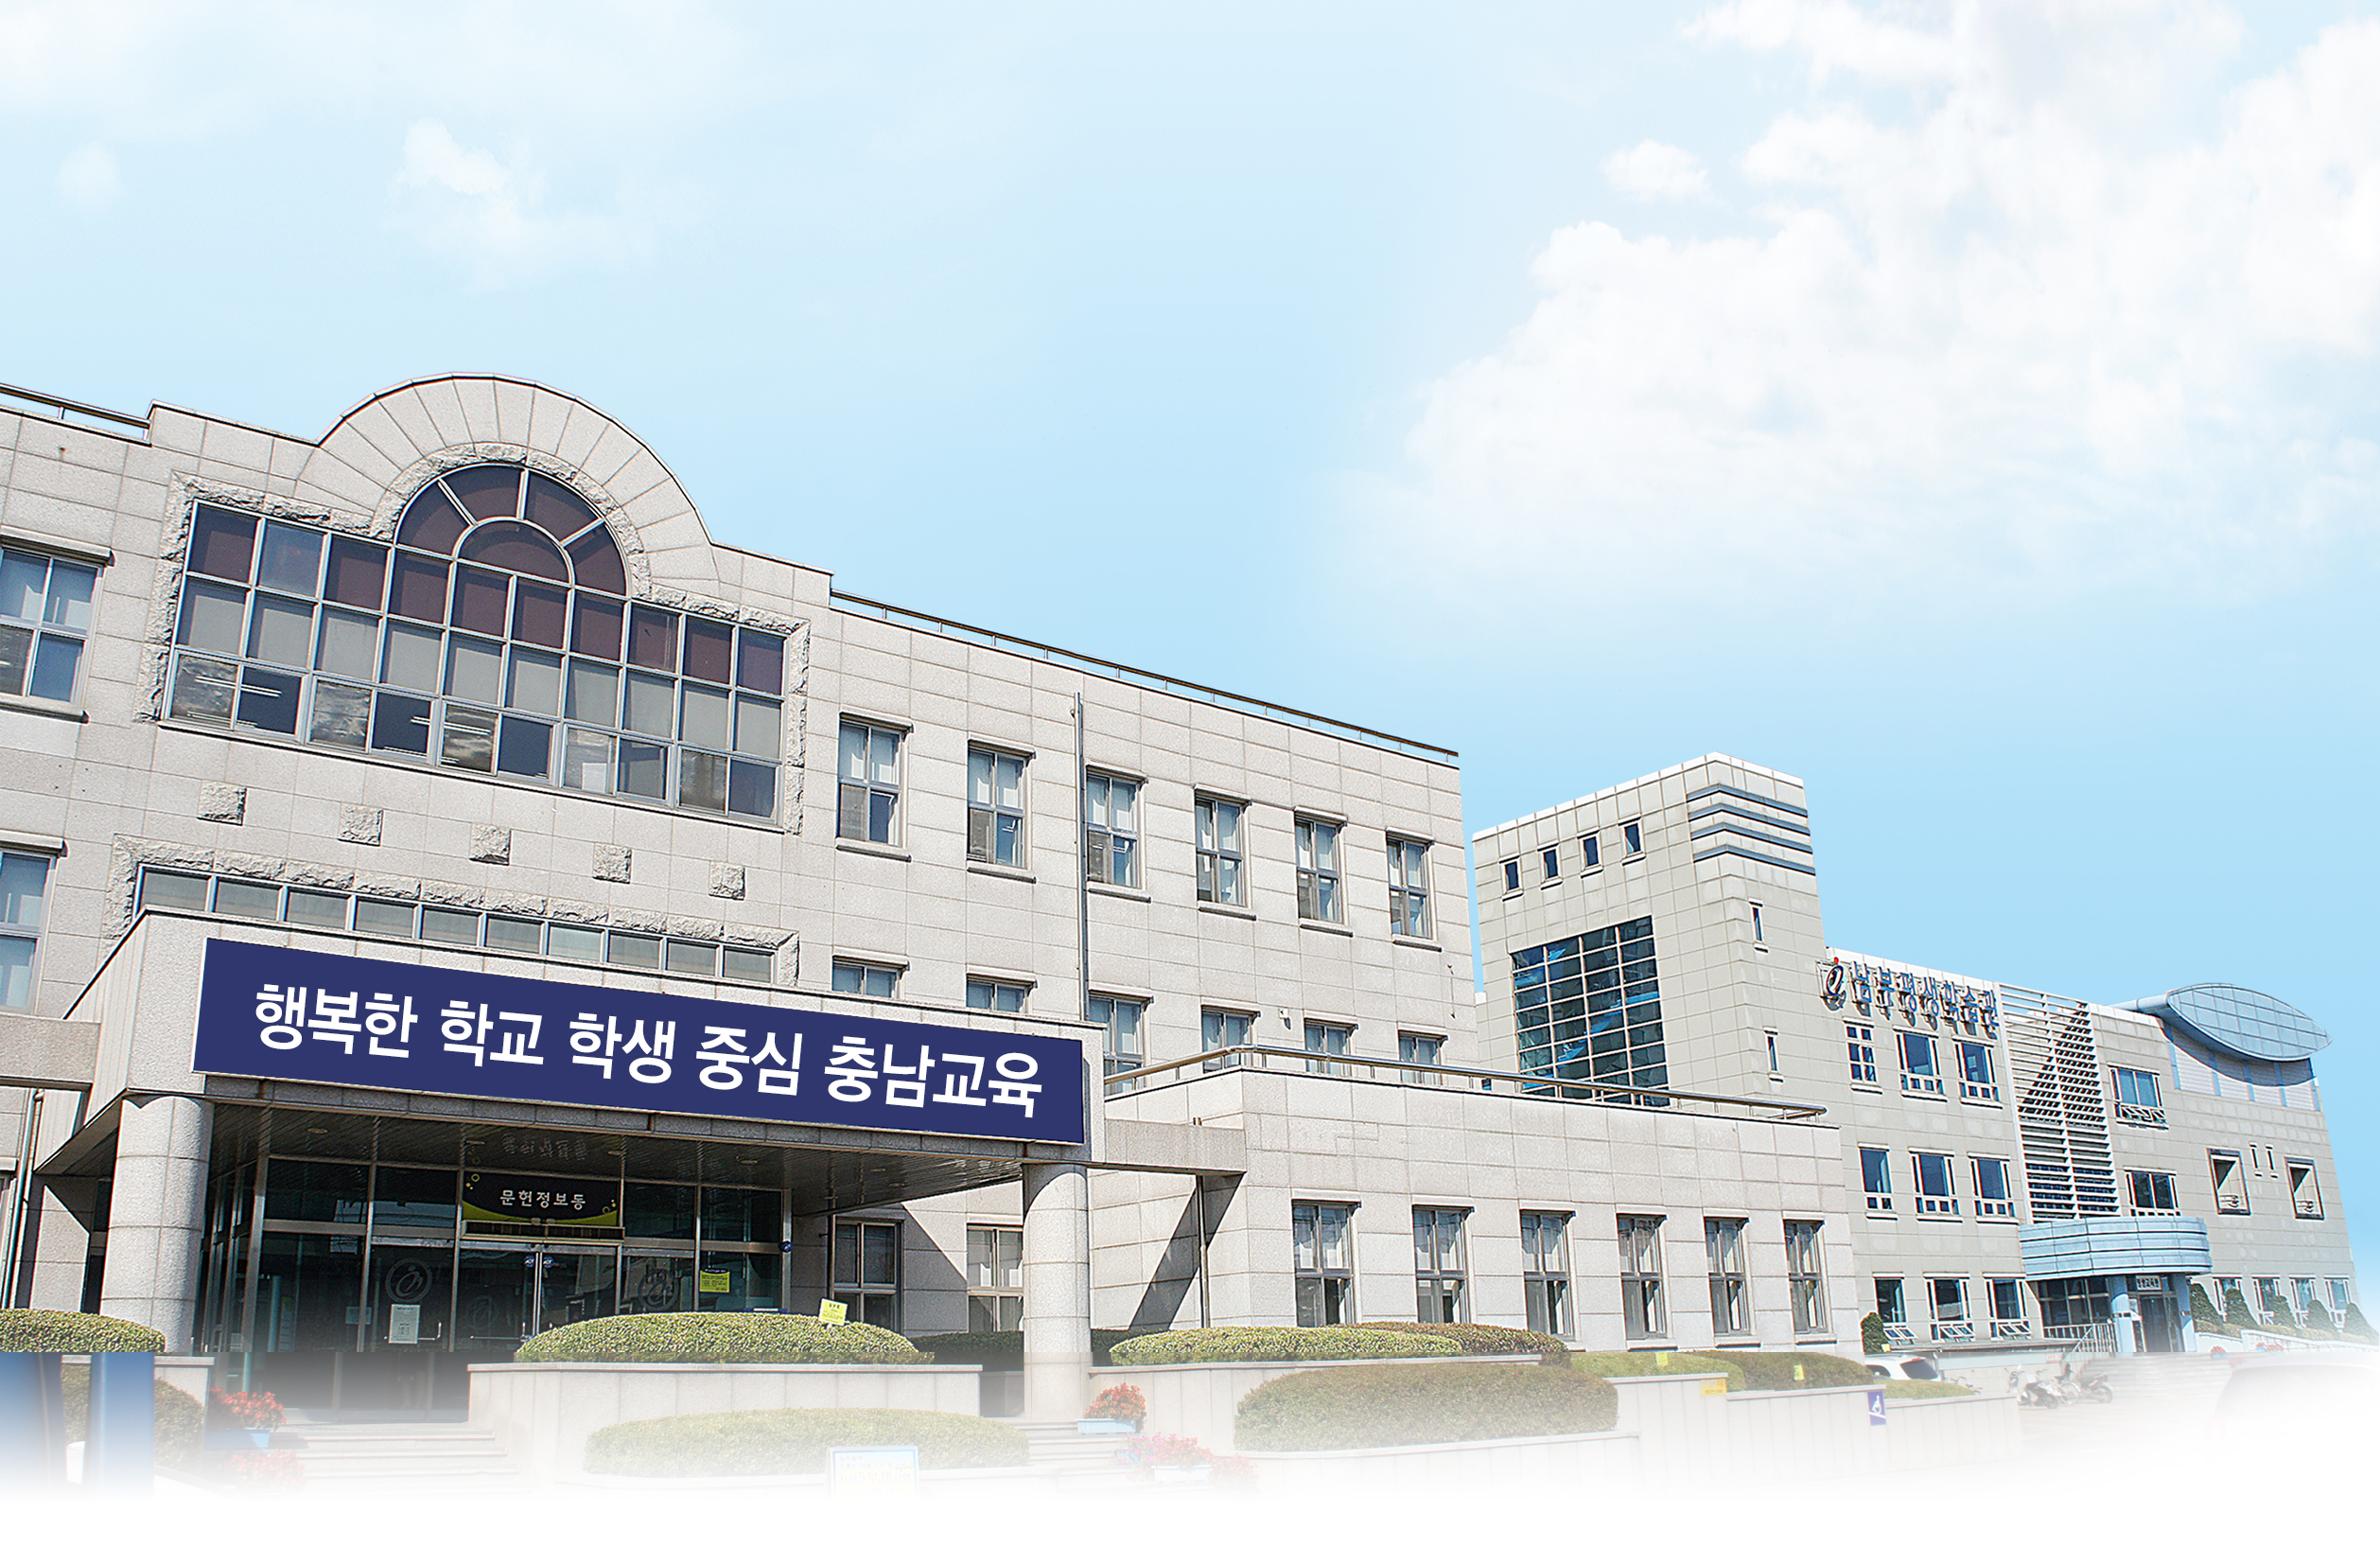 충남남부평생학습관 2017. 상반기 '학력인정' 성인문해교육 학습자 모집 알림